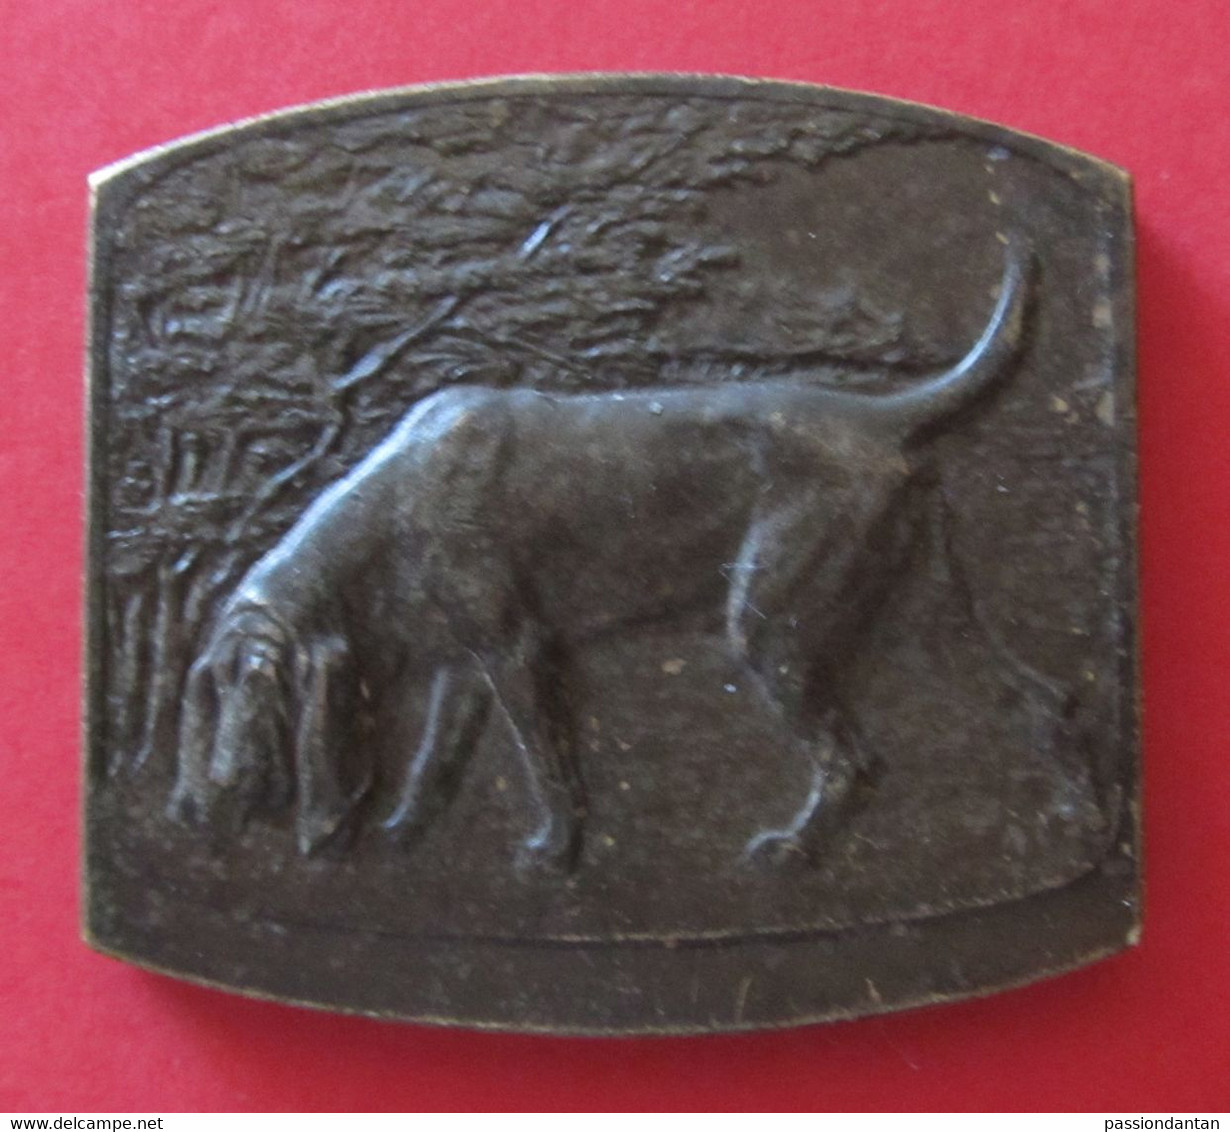 Médaille En Métal Jaune Signée Godefroid Devreese - Belgique - Société Royale Saint-Hubert - 1882 - 1932 - Unternehmen